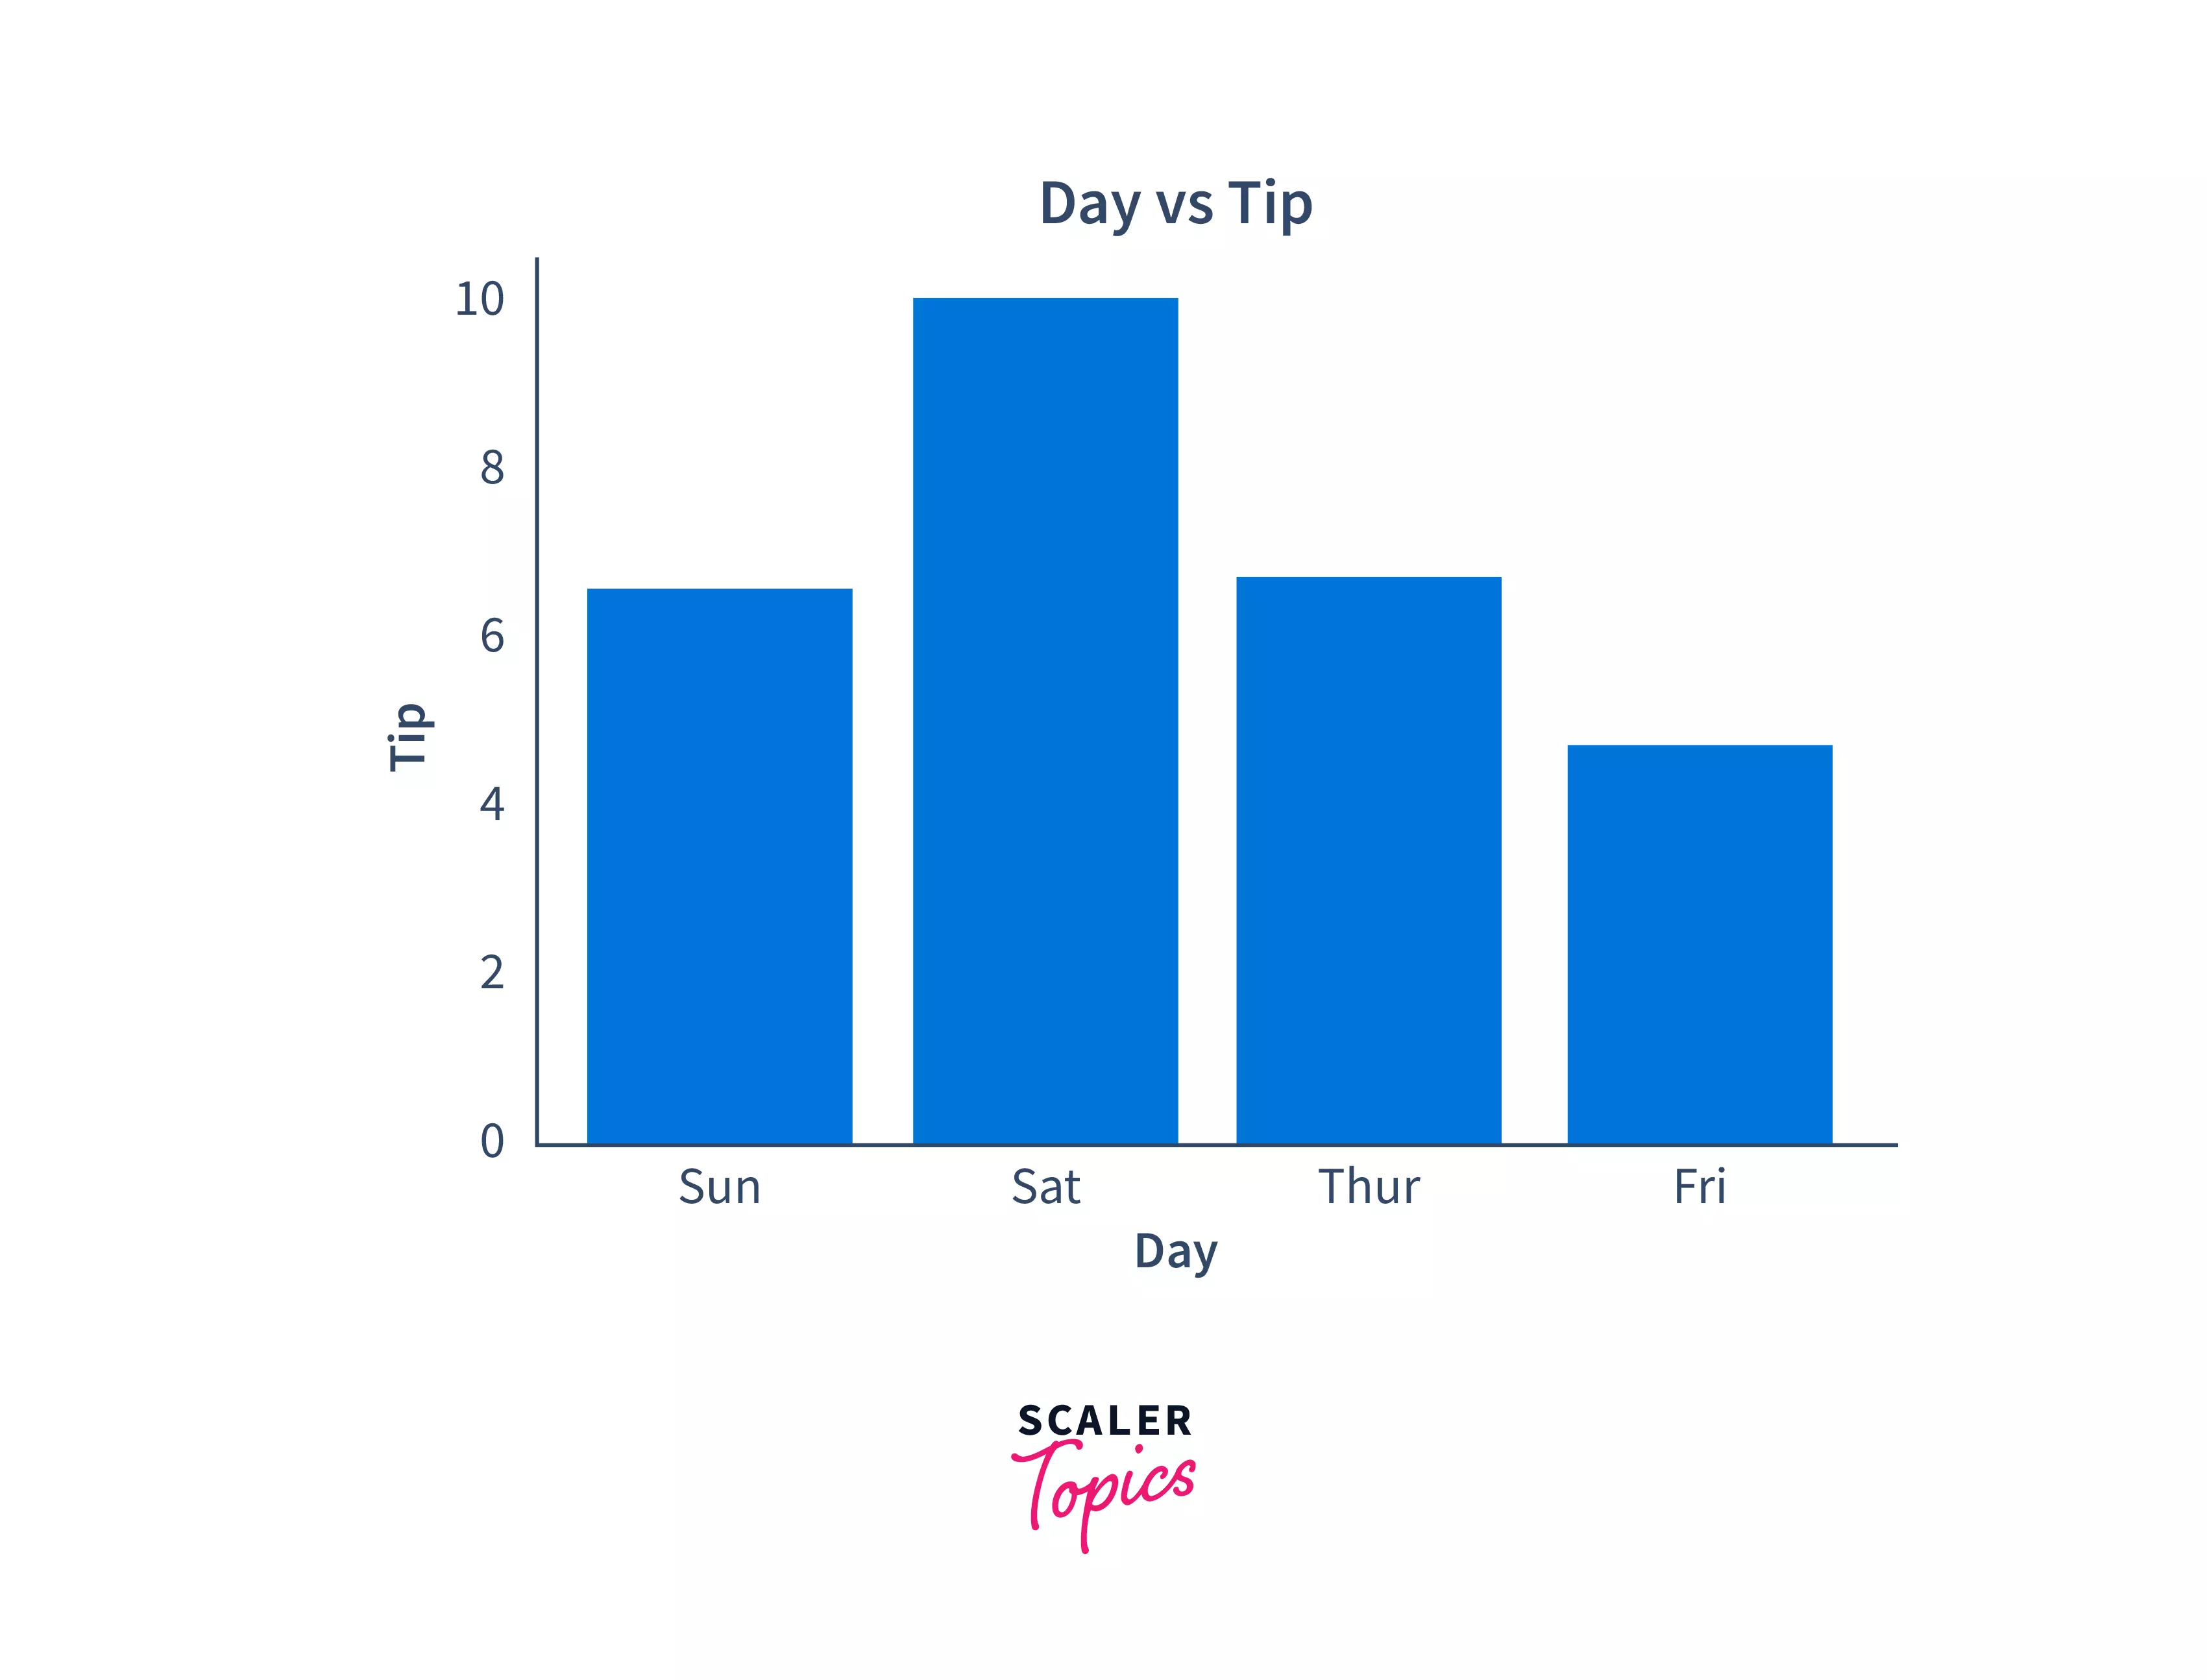 Days vs tip